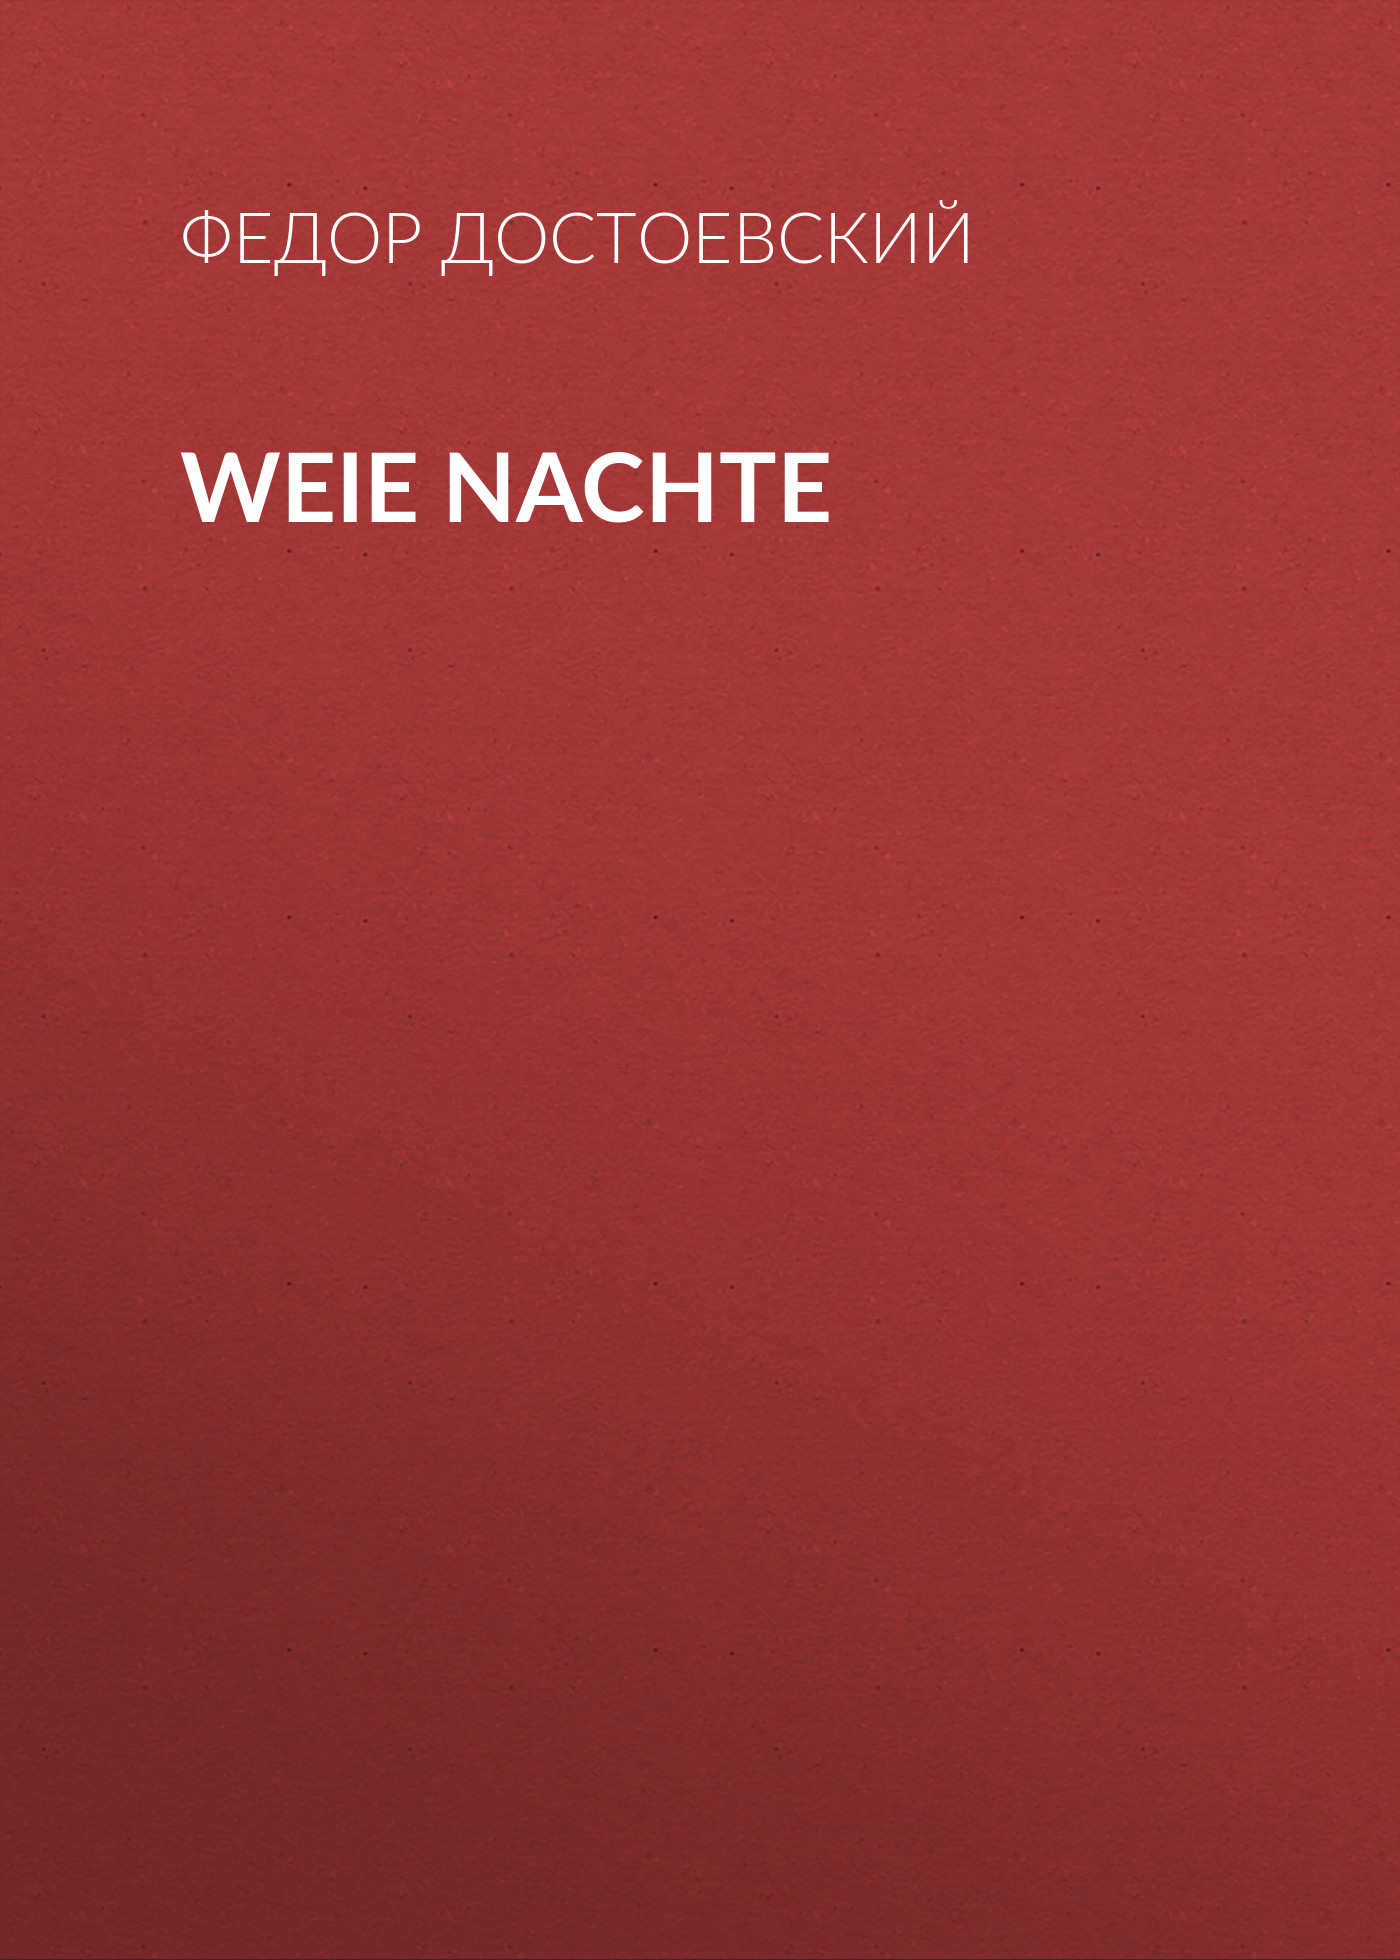 Книга Weie Nachte из серии , созданная Fjodor Dostojewski, может относится к жанру Русская классика. Стоимость электронной книги Weie Nachte с идентификатором 48633308 составляет 0 руб.